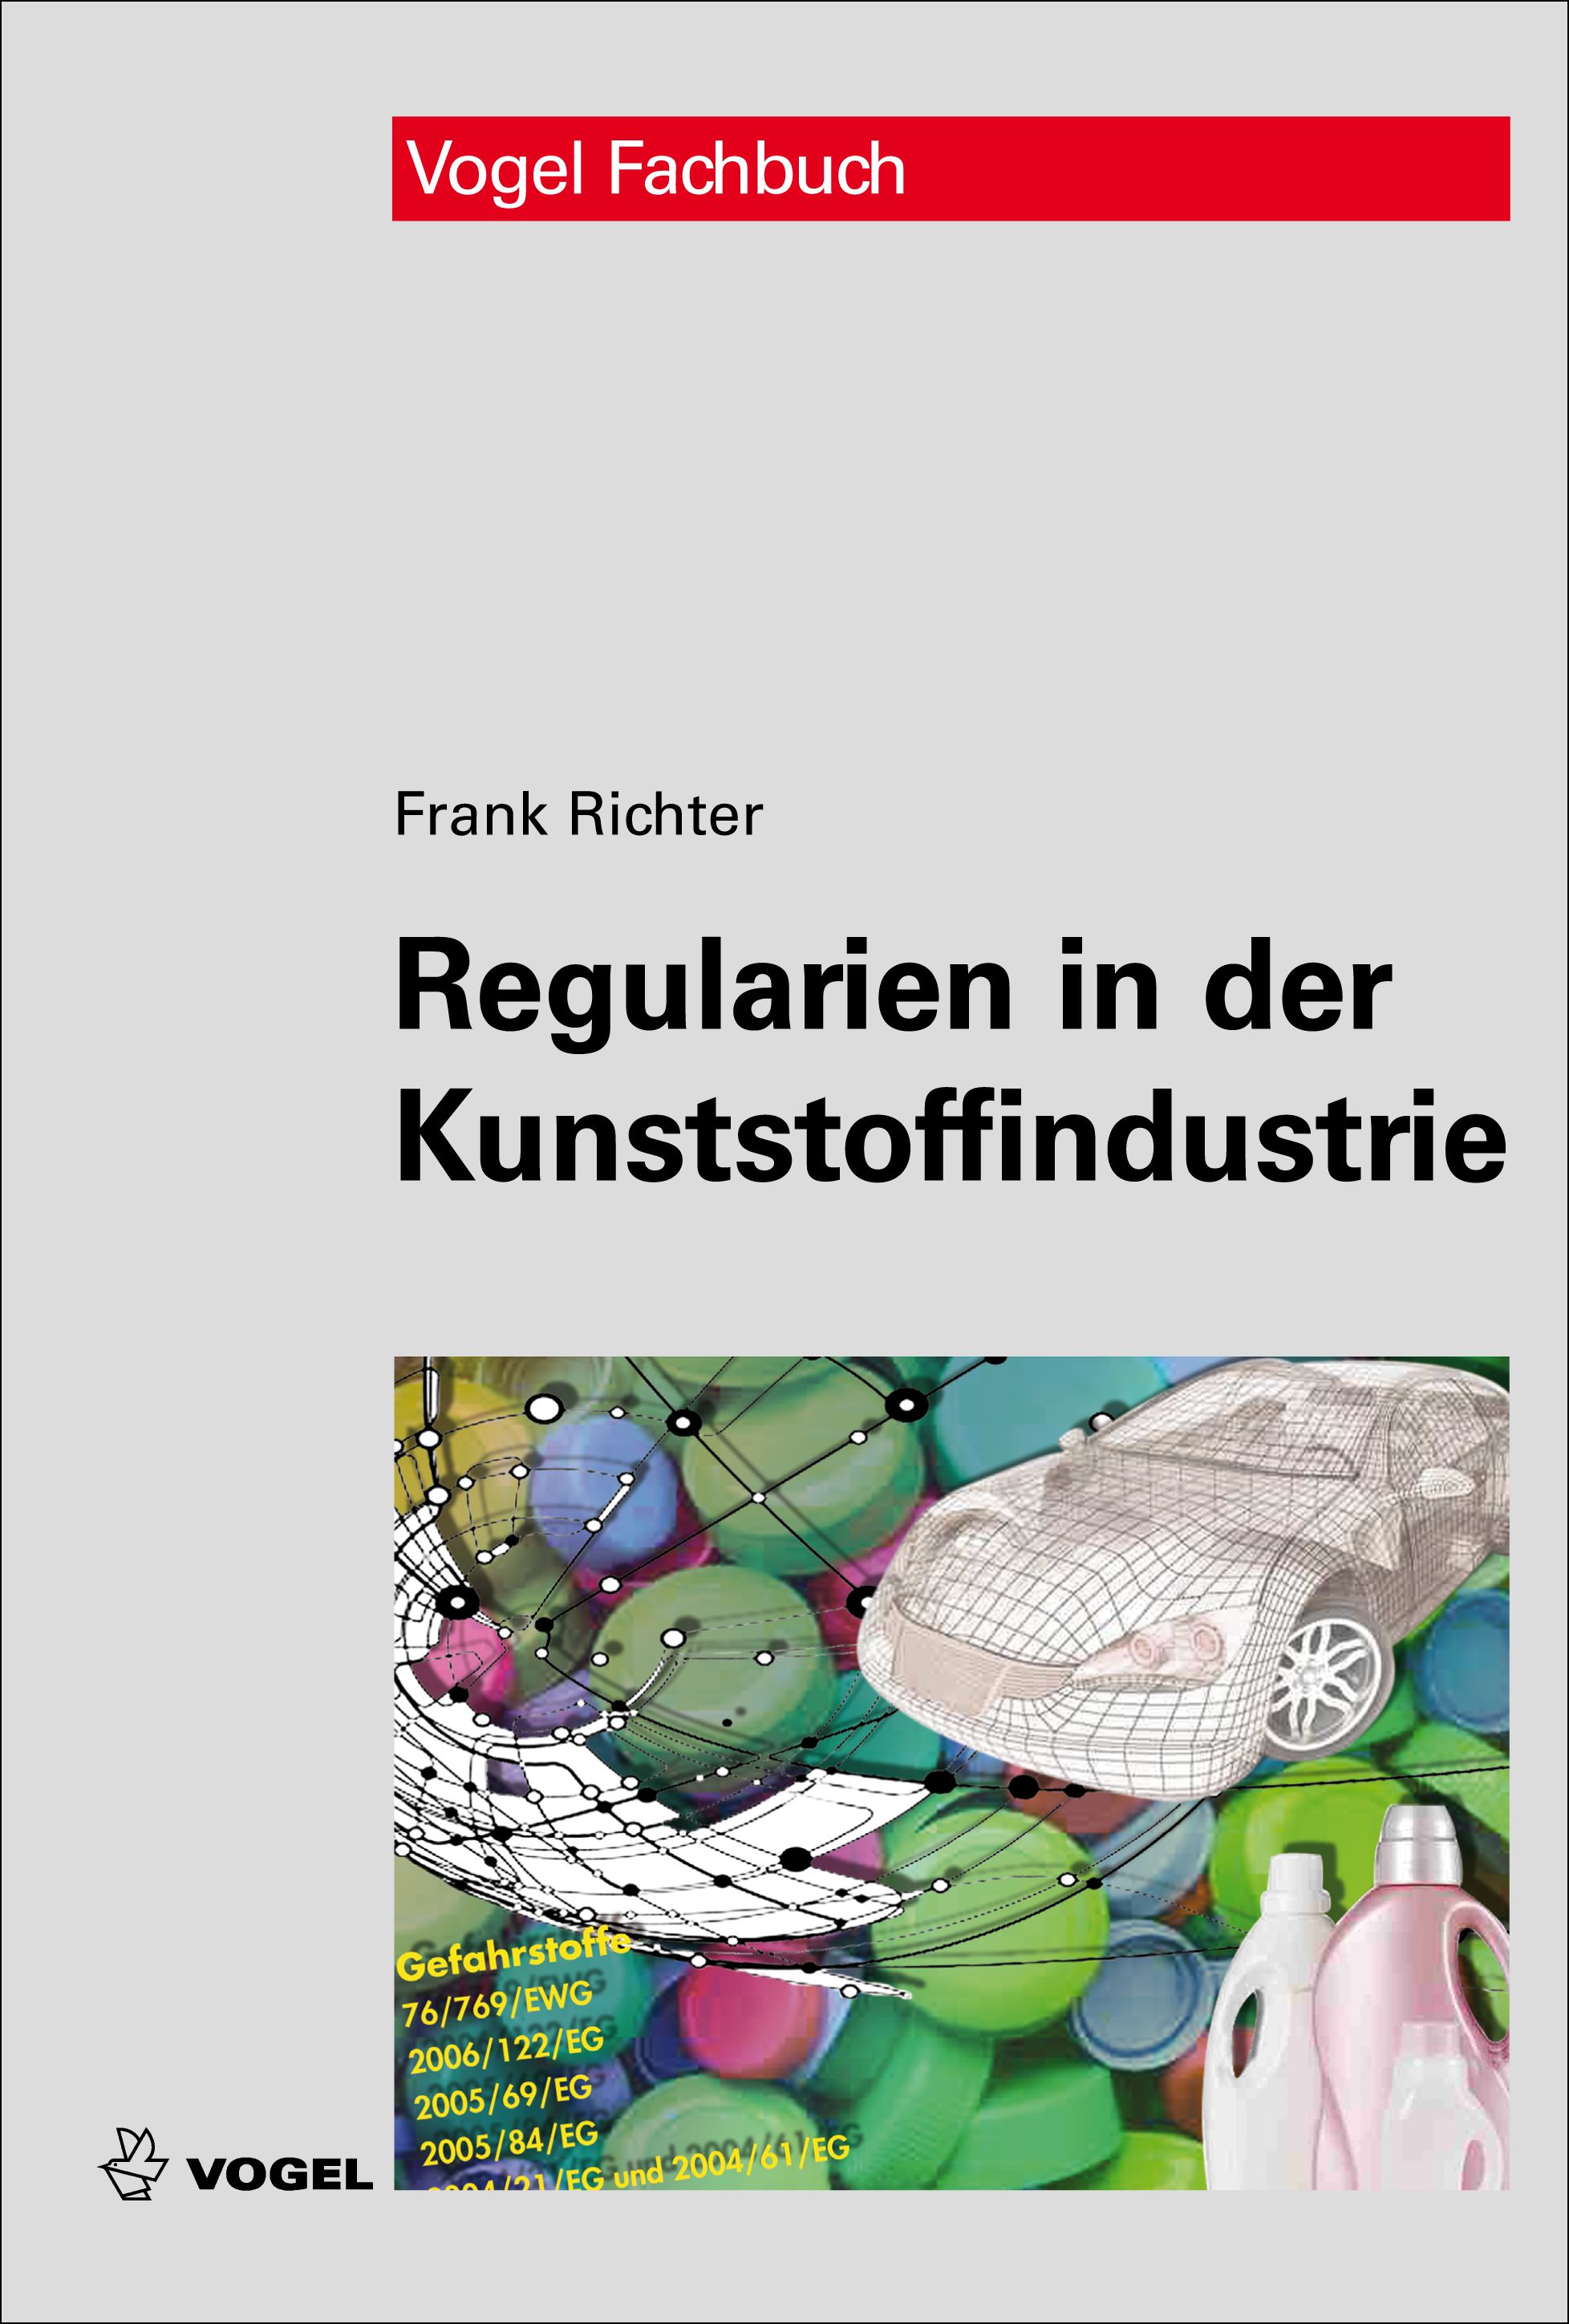 Das Fachbuch "Regularien in der Kunststoffindustrie" von Frank Richter